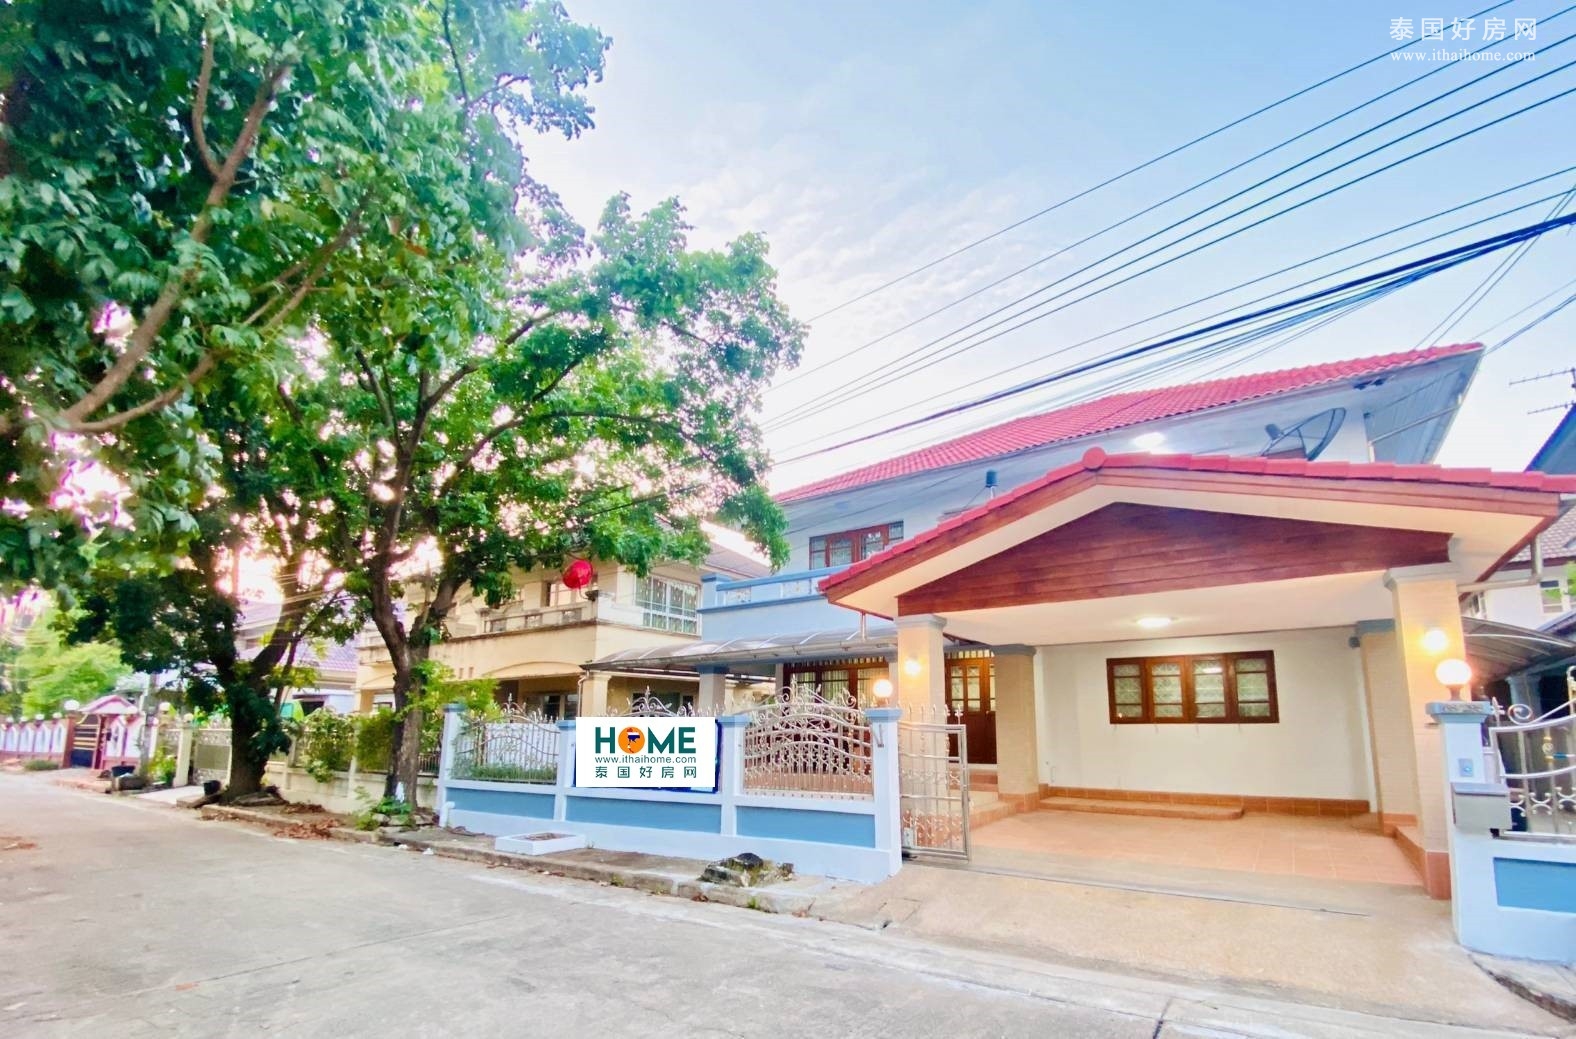 沙攀松区 | perfect place ramkhamhaeng 164 独栋别墅出租/售 5卧 230平米 租金32,000泰铢/月，售价629万泰铢